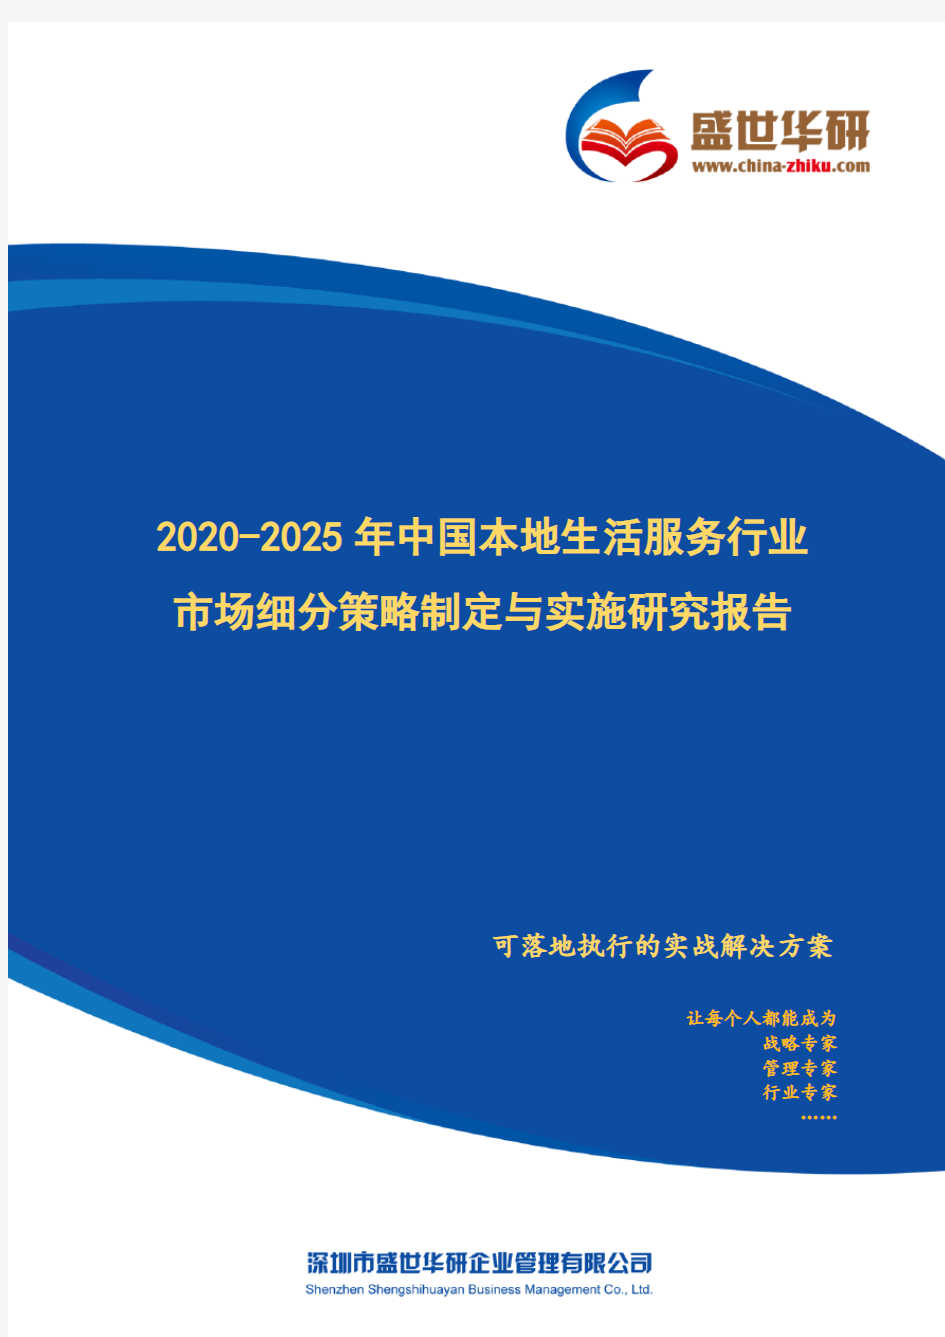 【完整版】2020-2025年中国本地生活服务行业市场细分策略制定与实施研究报告